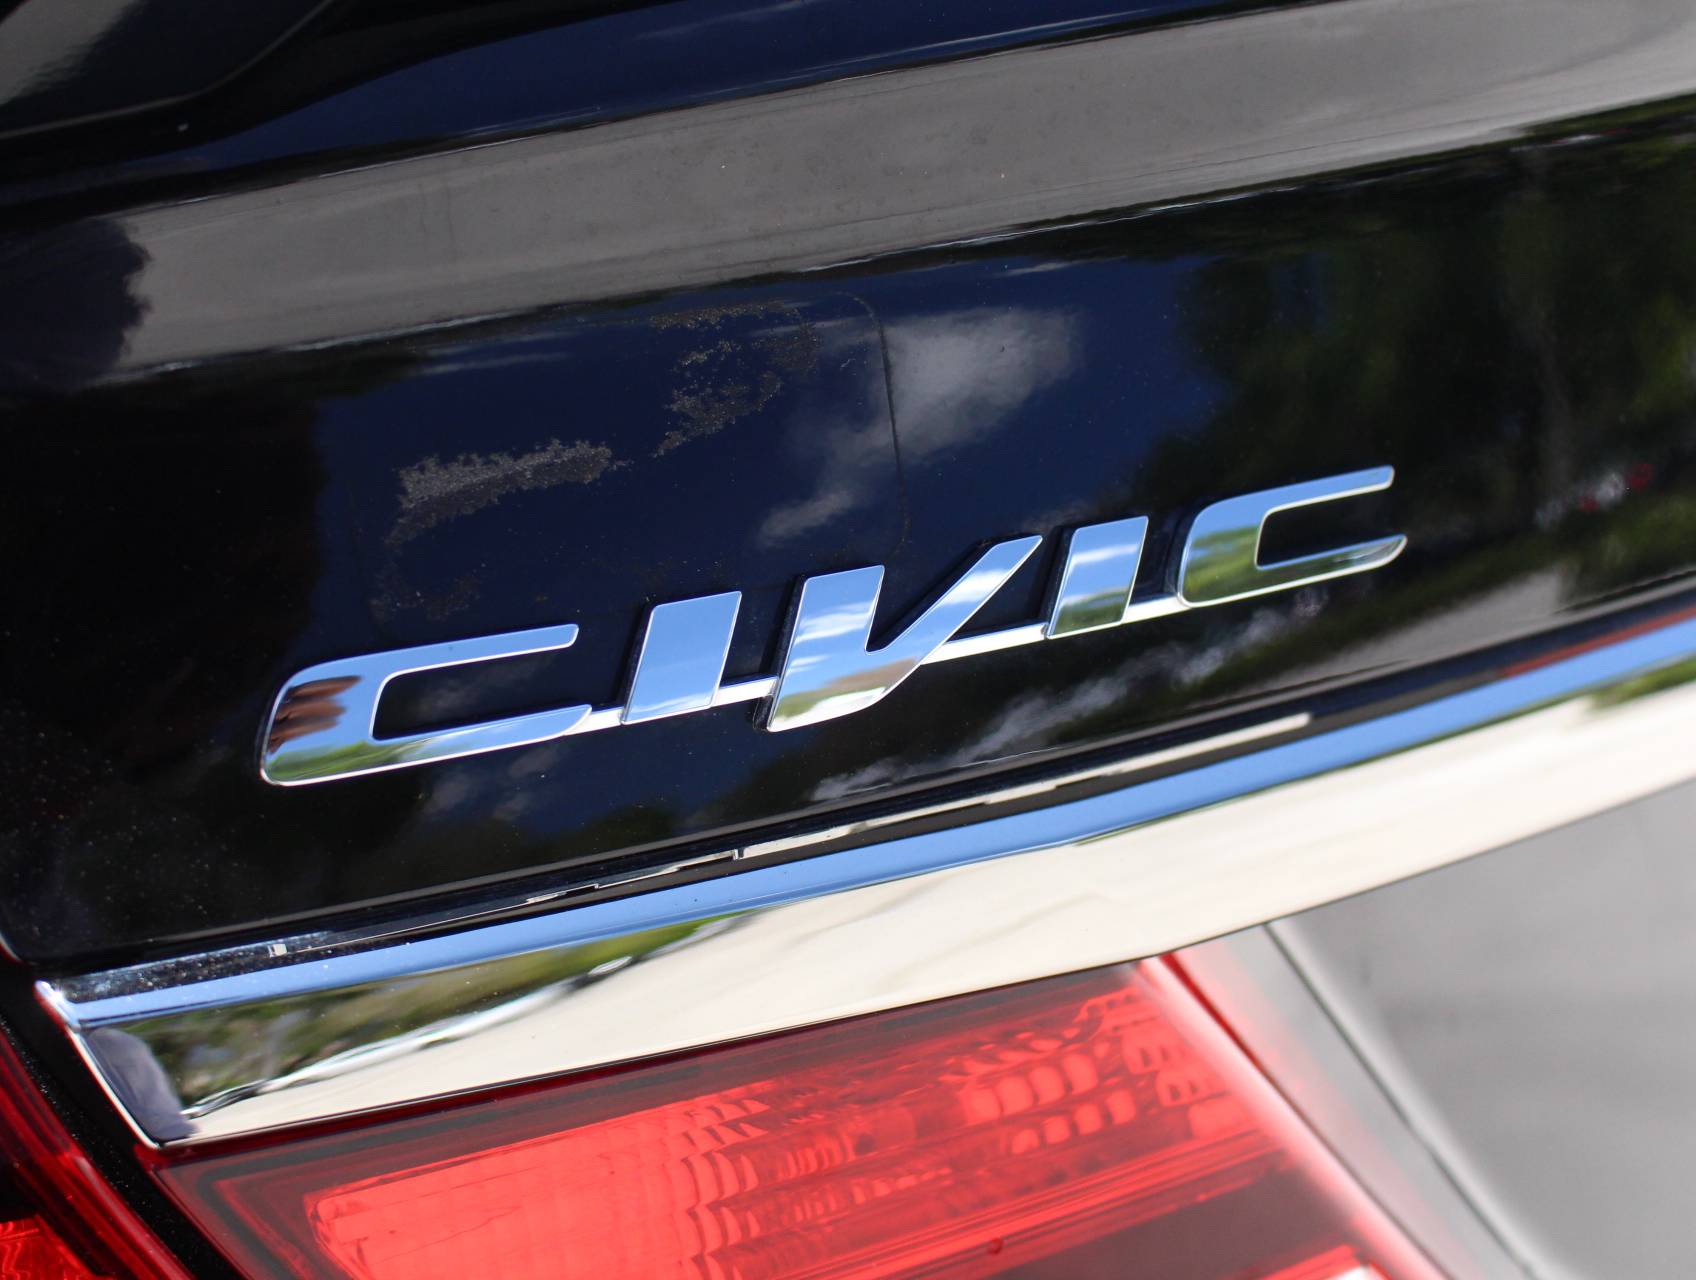 Florida Fine Cars - Used HONDA CIVIC 2015 MARGATE SI